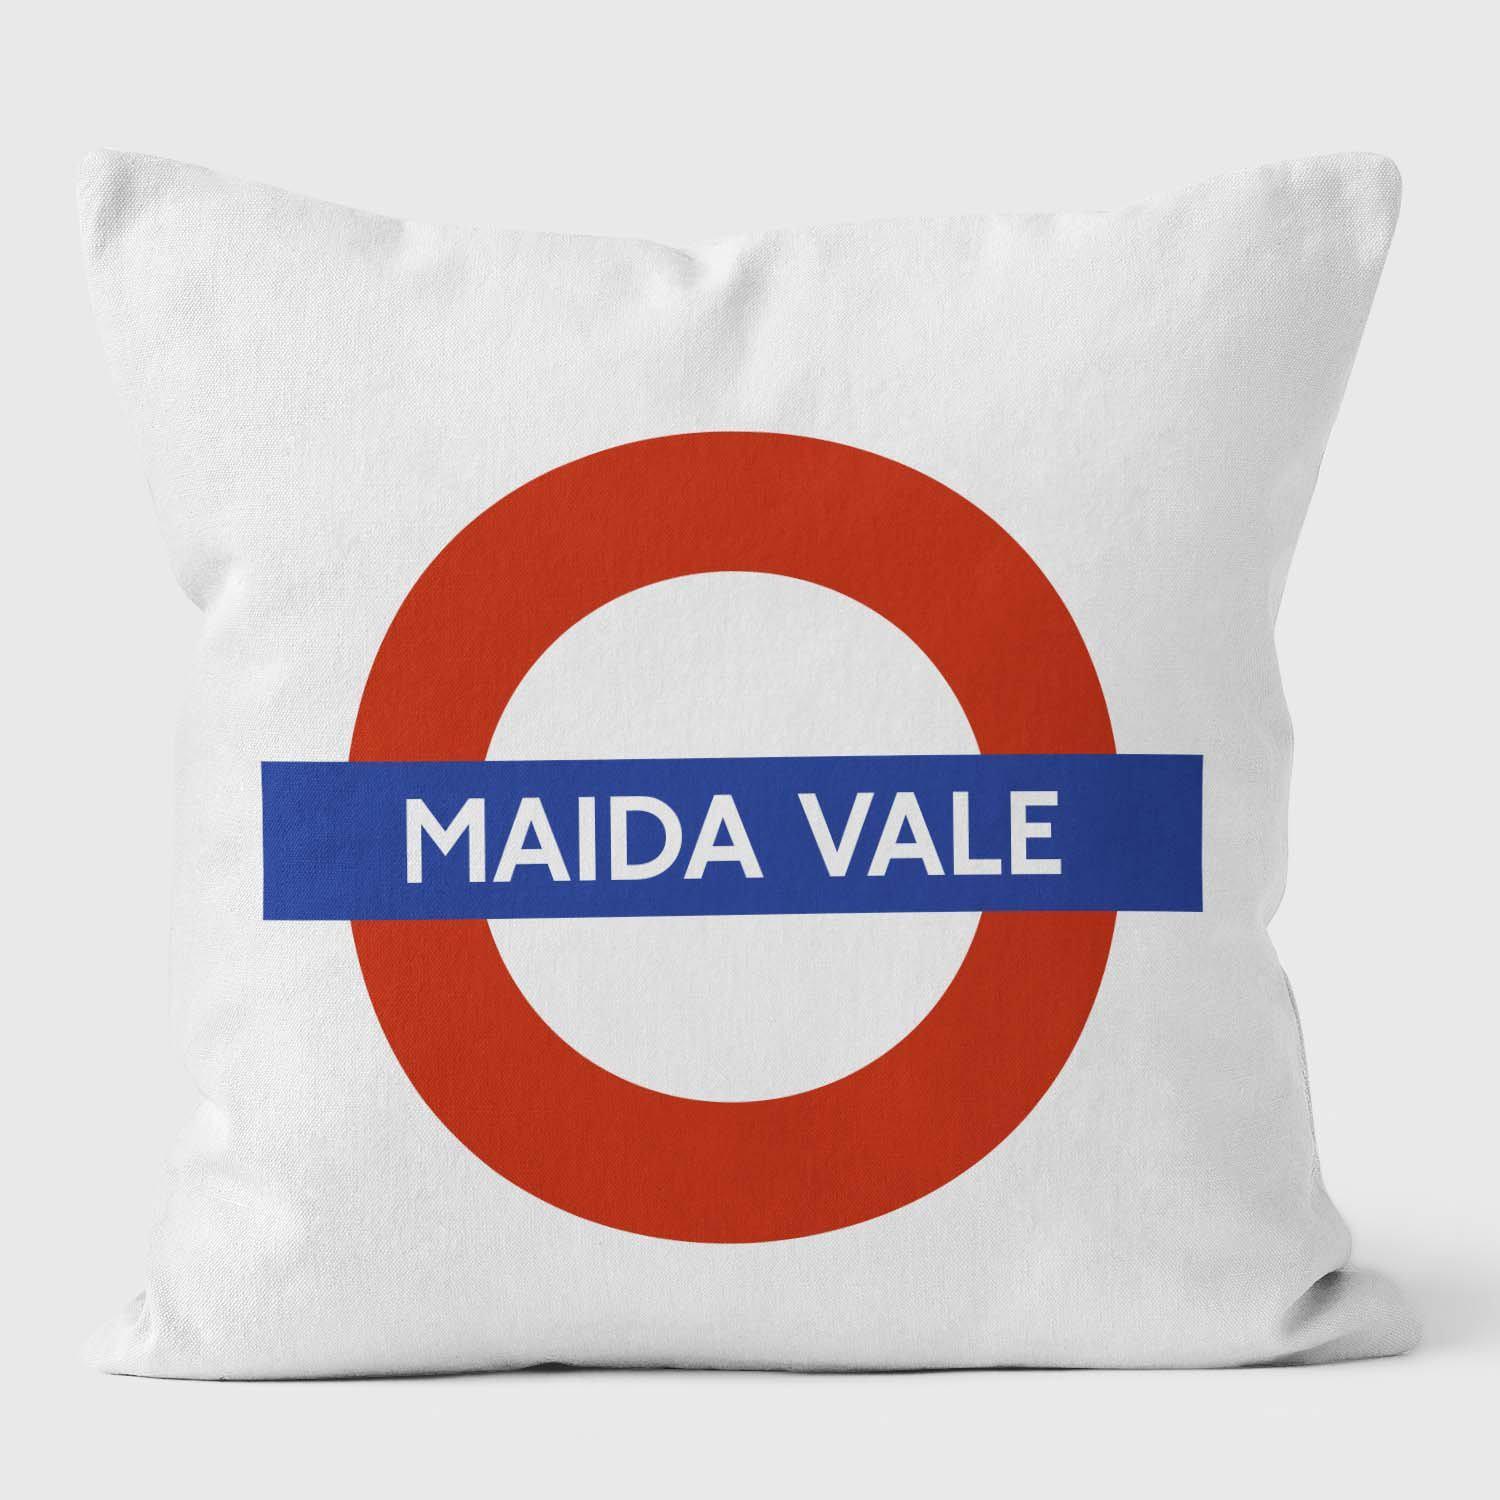 Maida Vale London Underground Tube Station Roundel Cushion - Handmade Cushions UK - WeLoveCushions